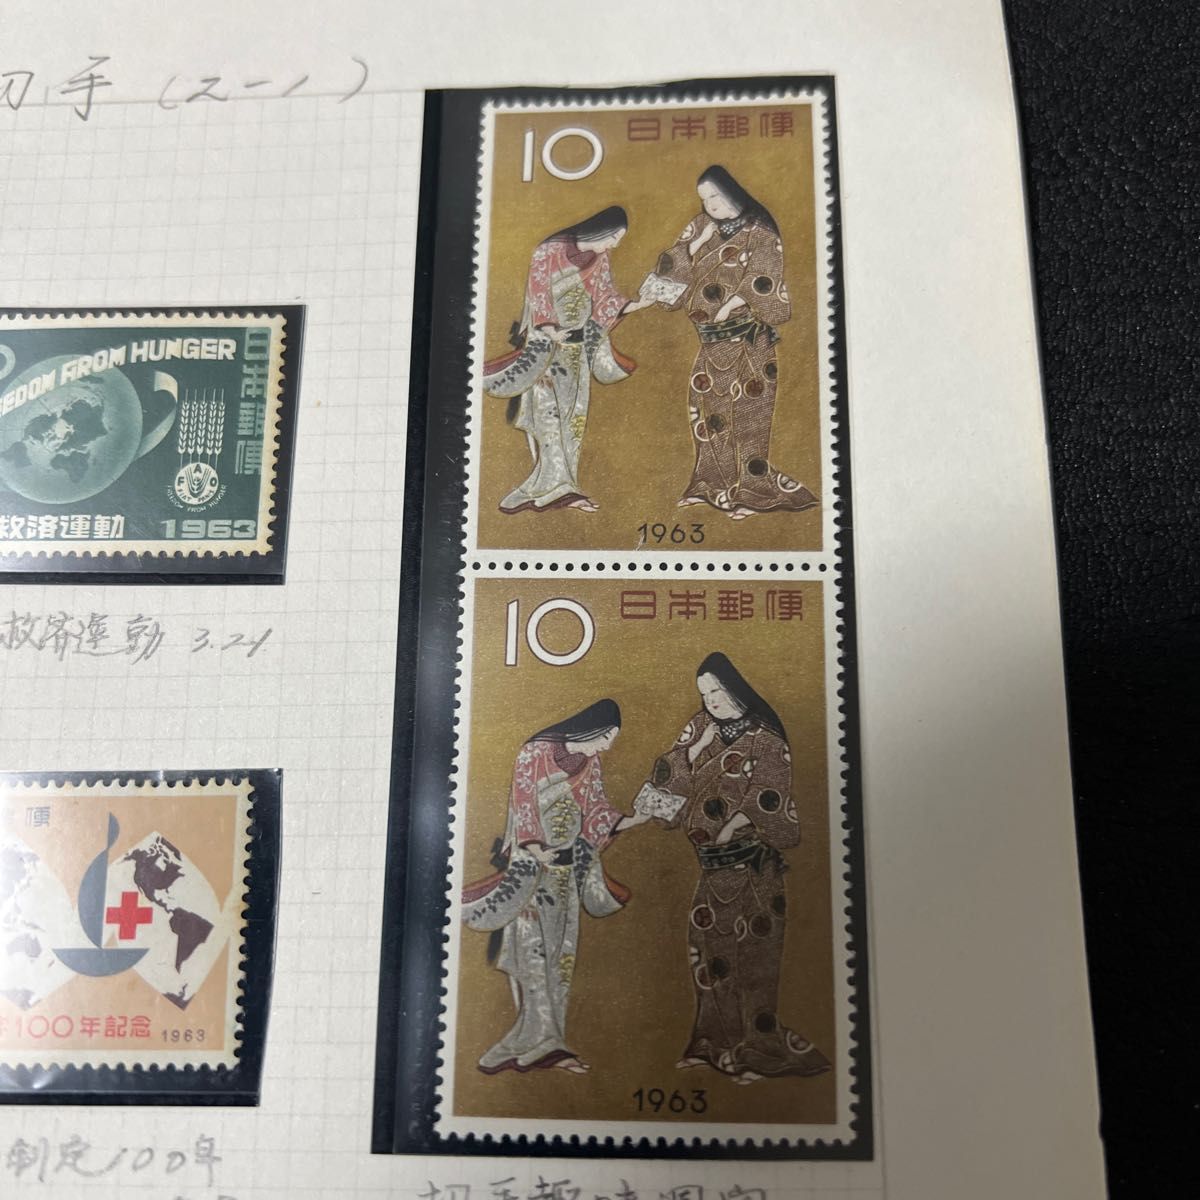 日本郵便記念切手  切手趣味週間 1963年「千姫」鳥シリーズ切手飢餓救運動 赤十字100年記念切手記念切手　北九州市発足記念　